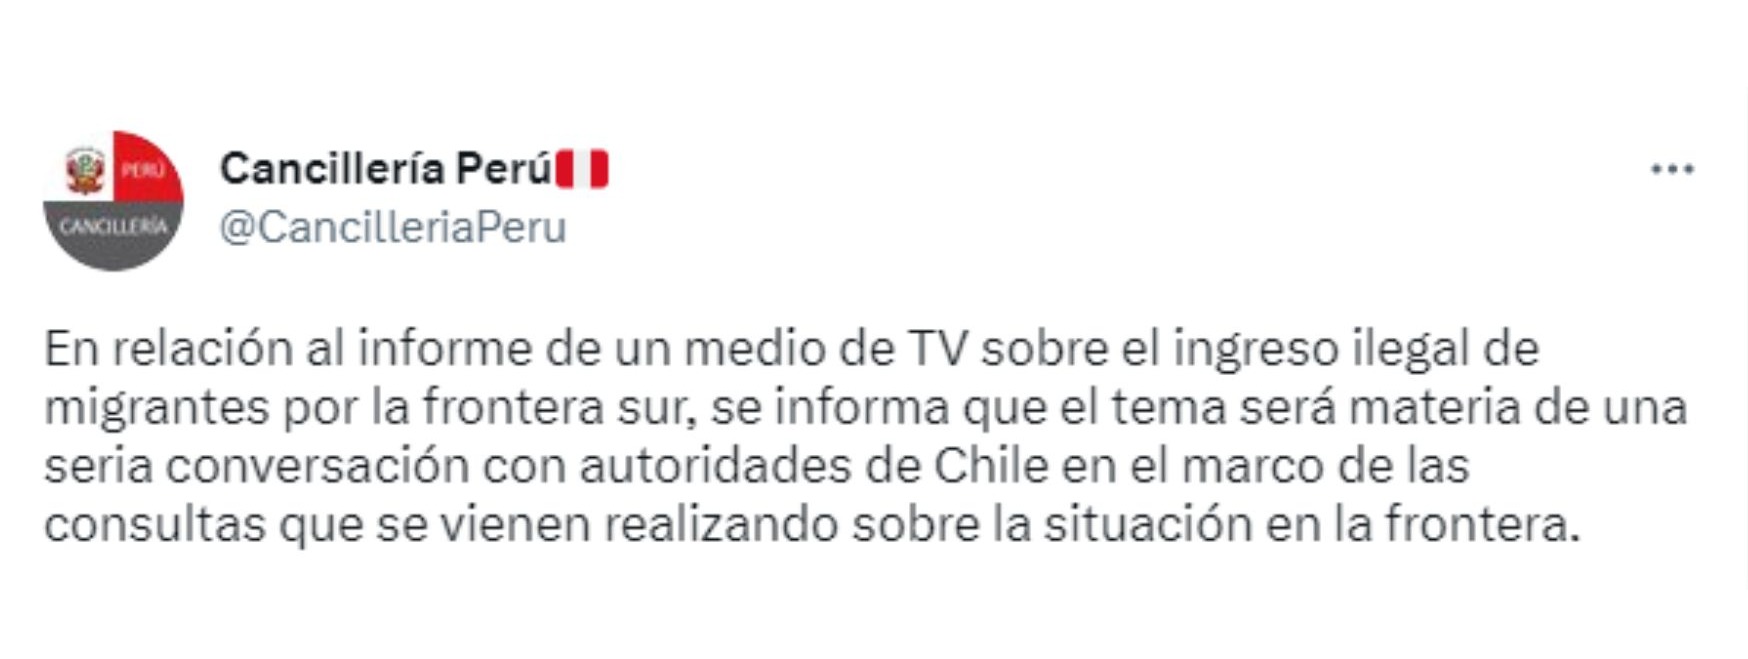 Este fue el tweet que la Cancillería del Perú emitió luego de conocerse el reportaje / Fuente: Twitter Cancillería